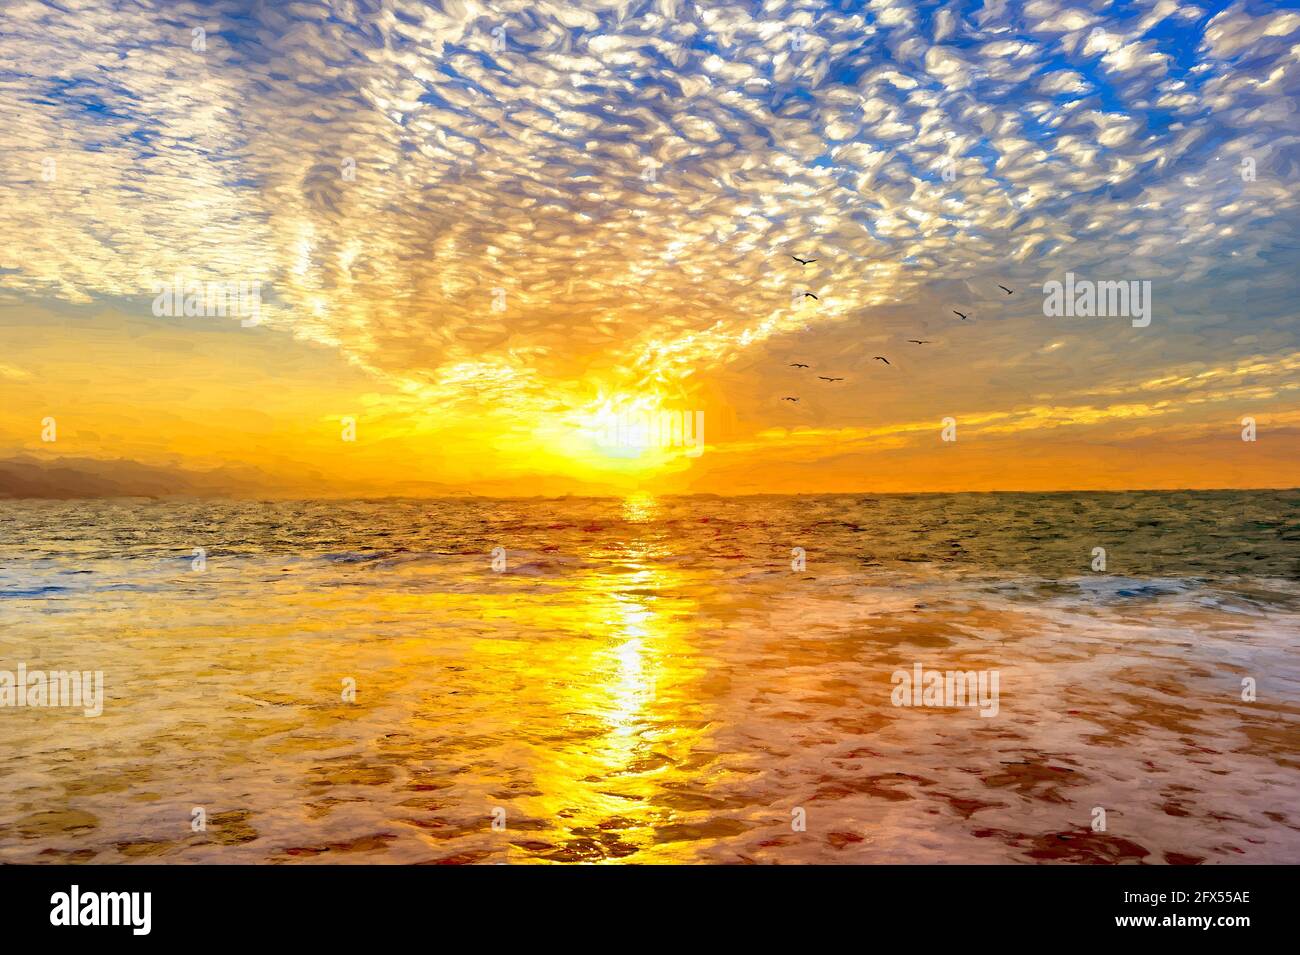 Gli uccelli stanno volando in UN paesaggio nuvoloso colorato e dettagliato del tramonto sull'oceano Come un'onda dolce rotola al Seashore in Illustrazione Formato pittura Foto Stock